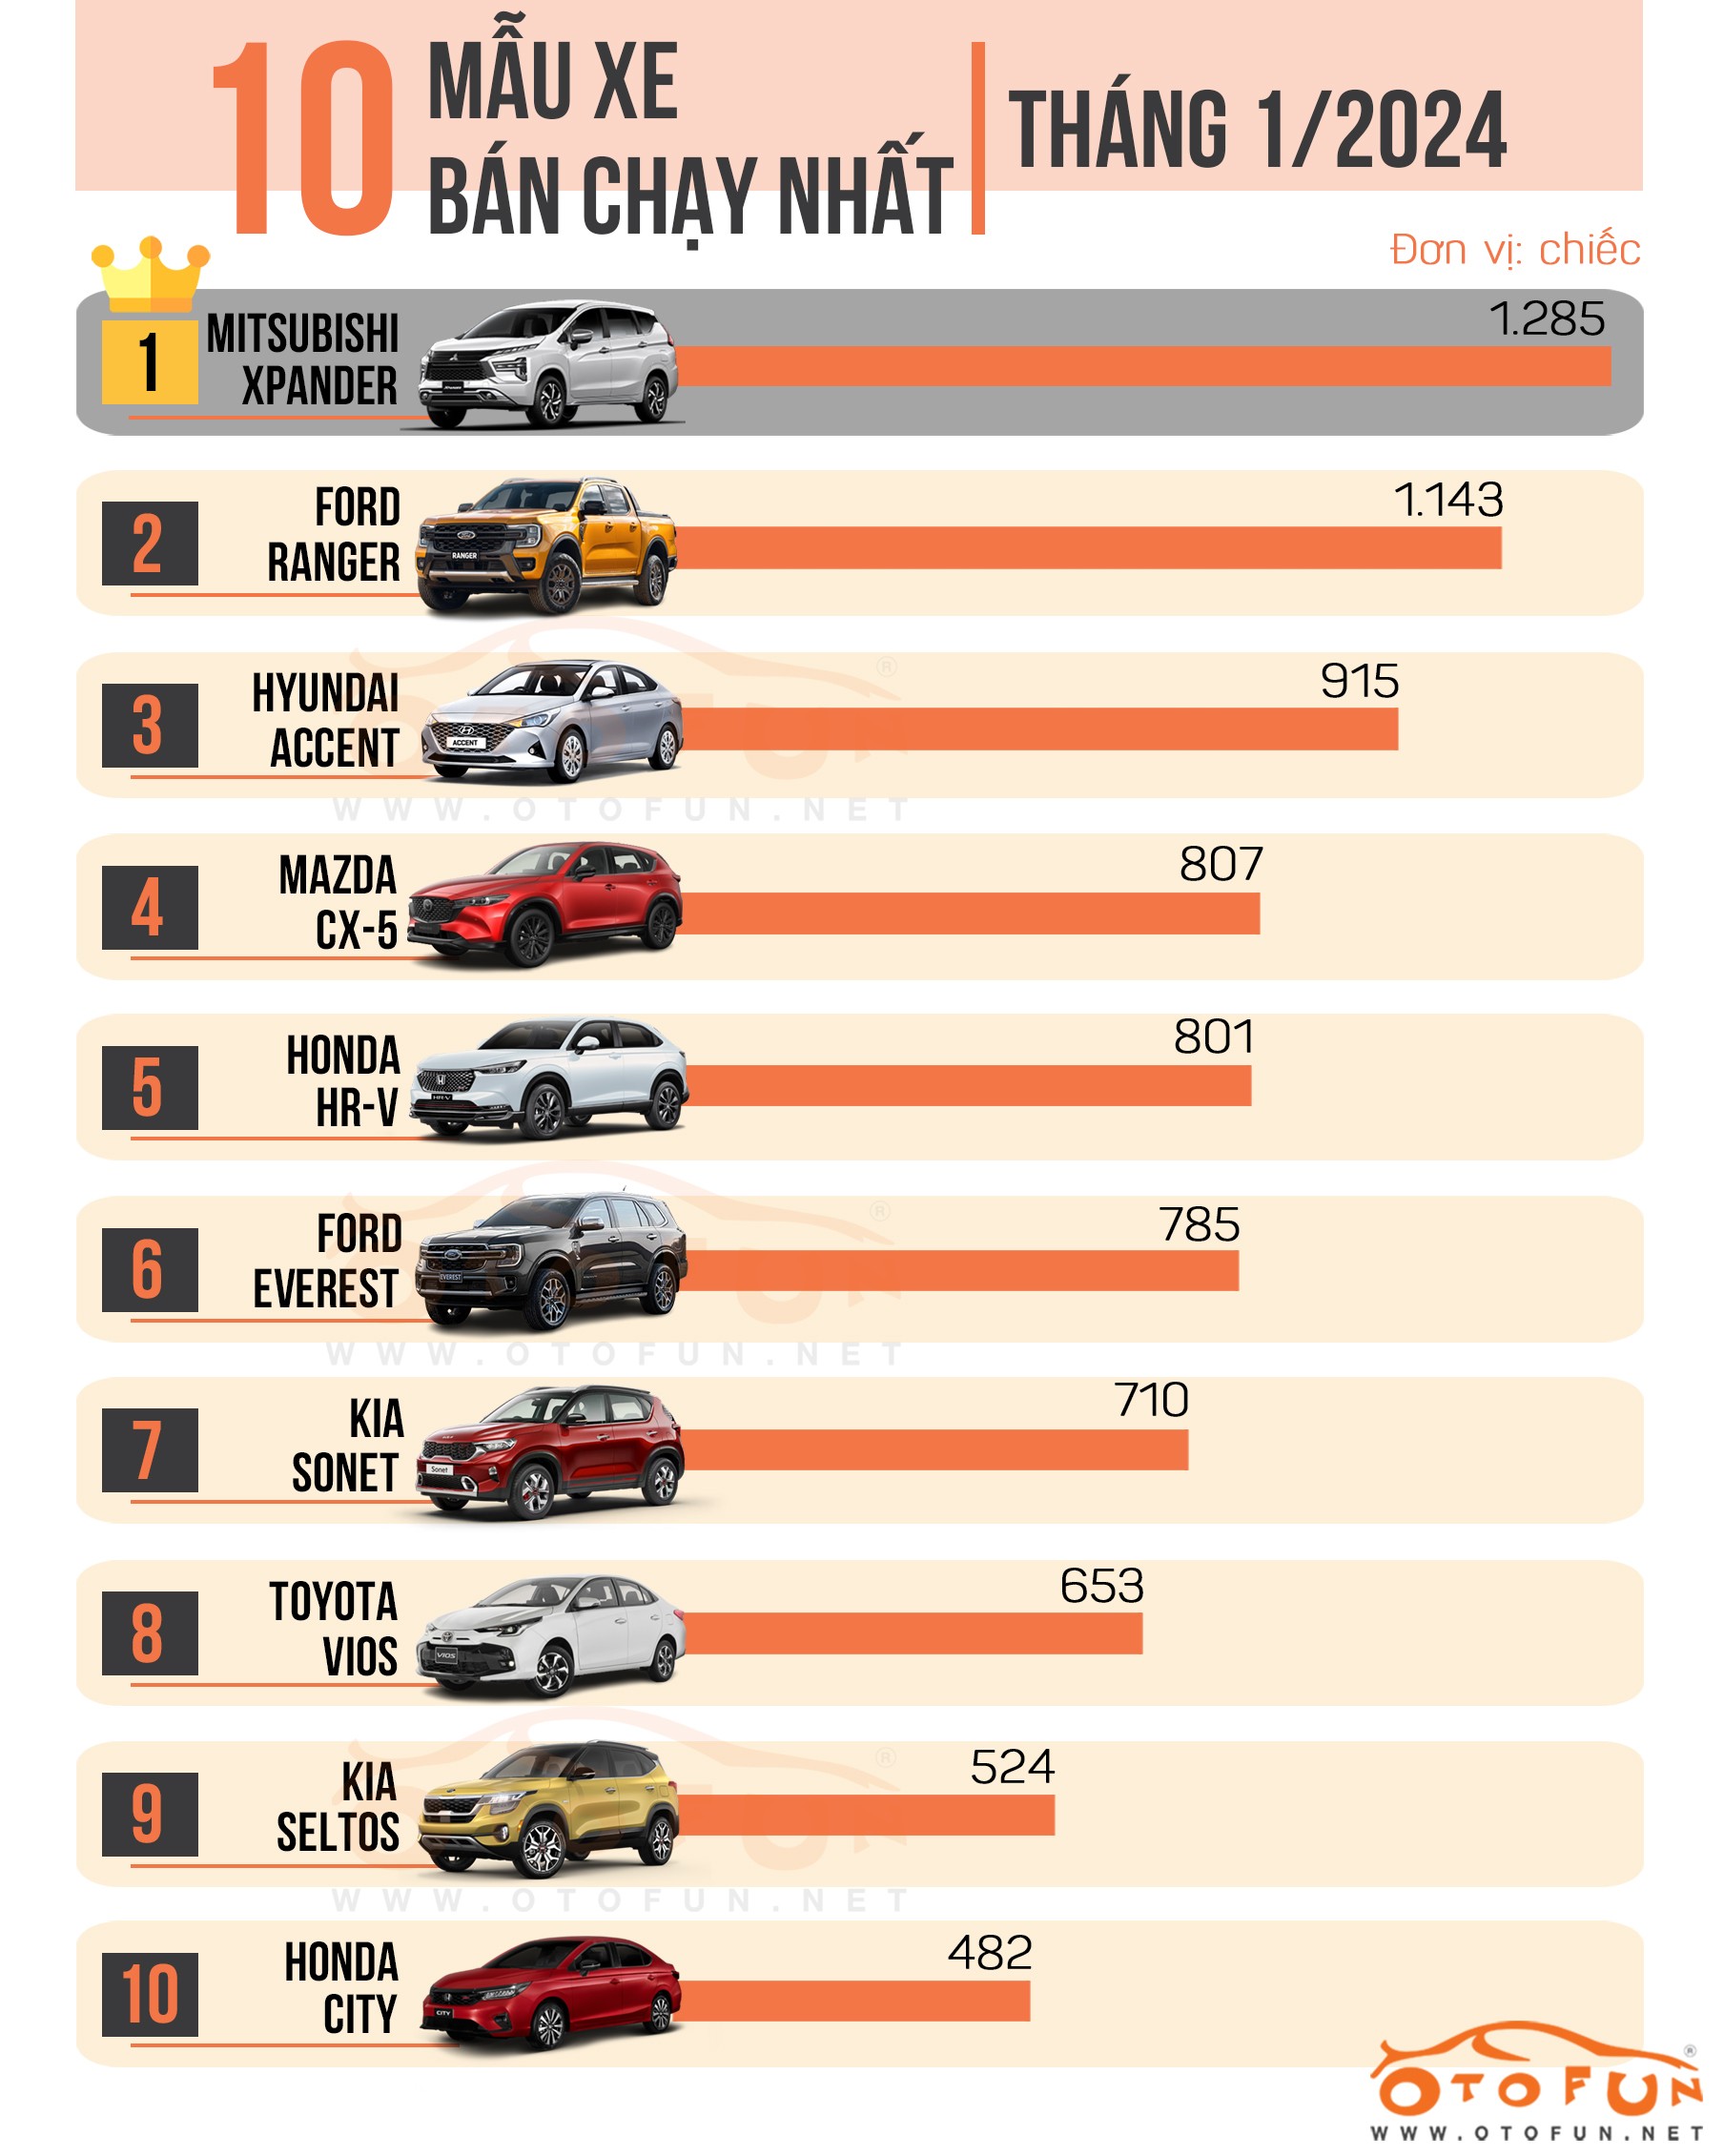 10 xe bán chạy nhất tháng 2/2024: Vắng bóng Toyota, Kia Carnival bất ngờ góp mặt